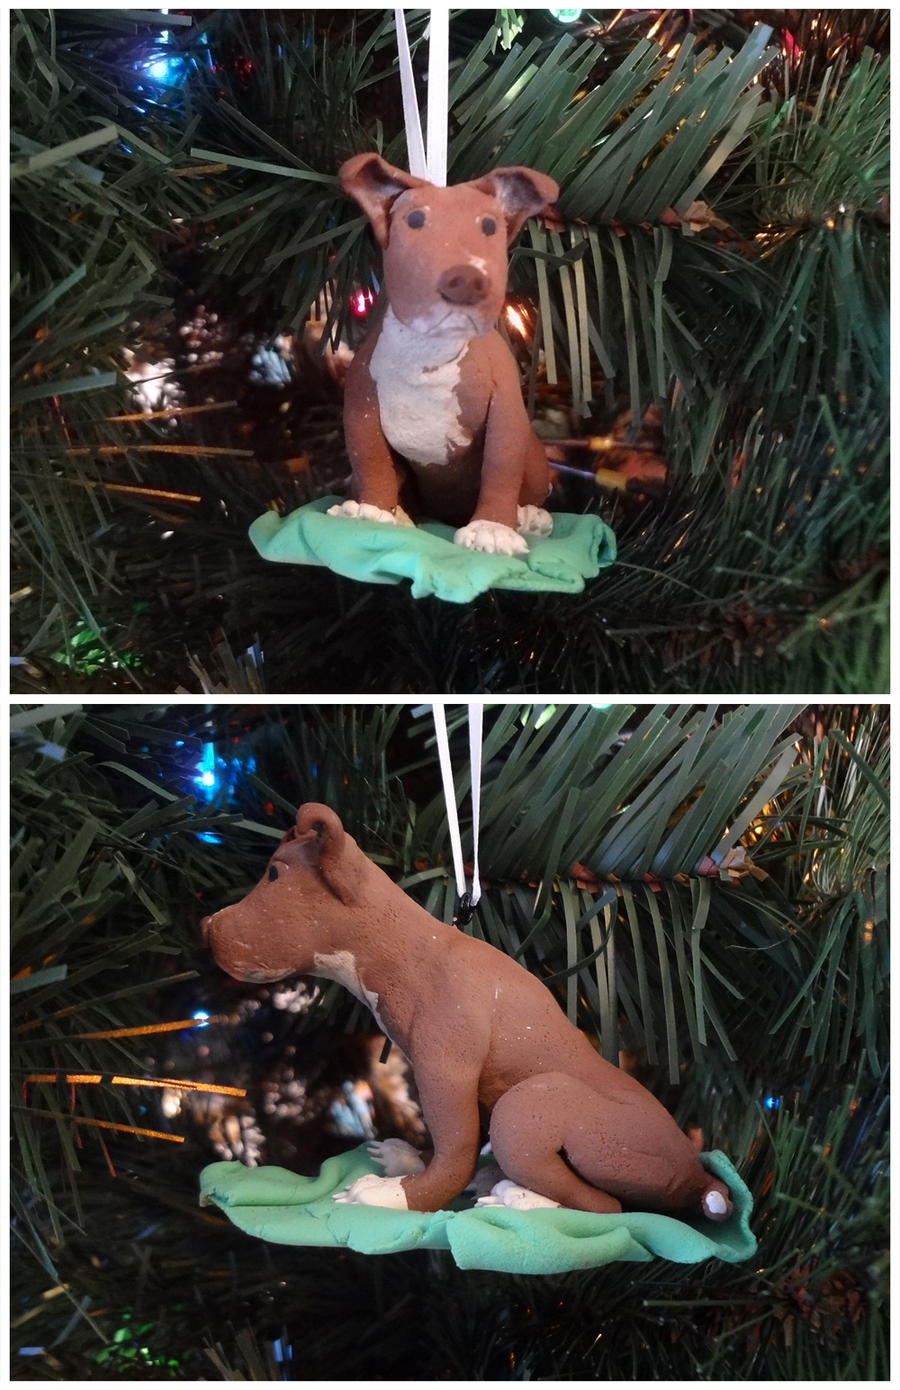 Doggie ornament